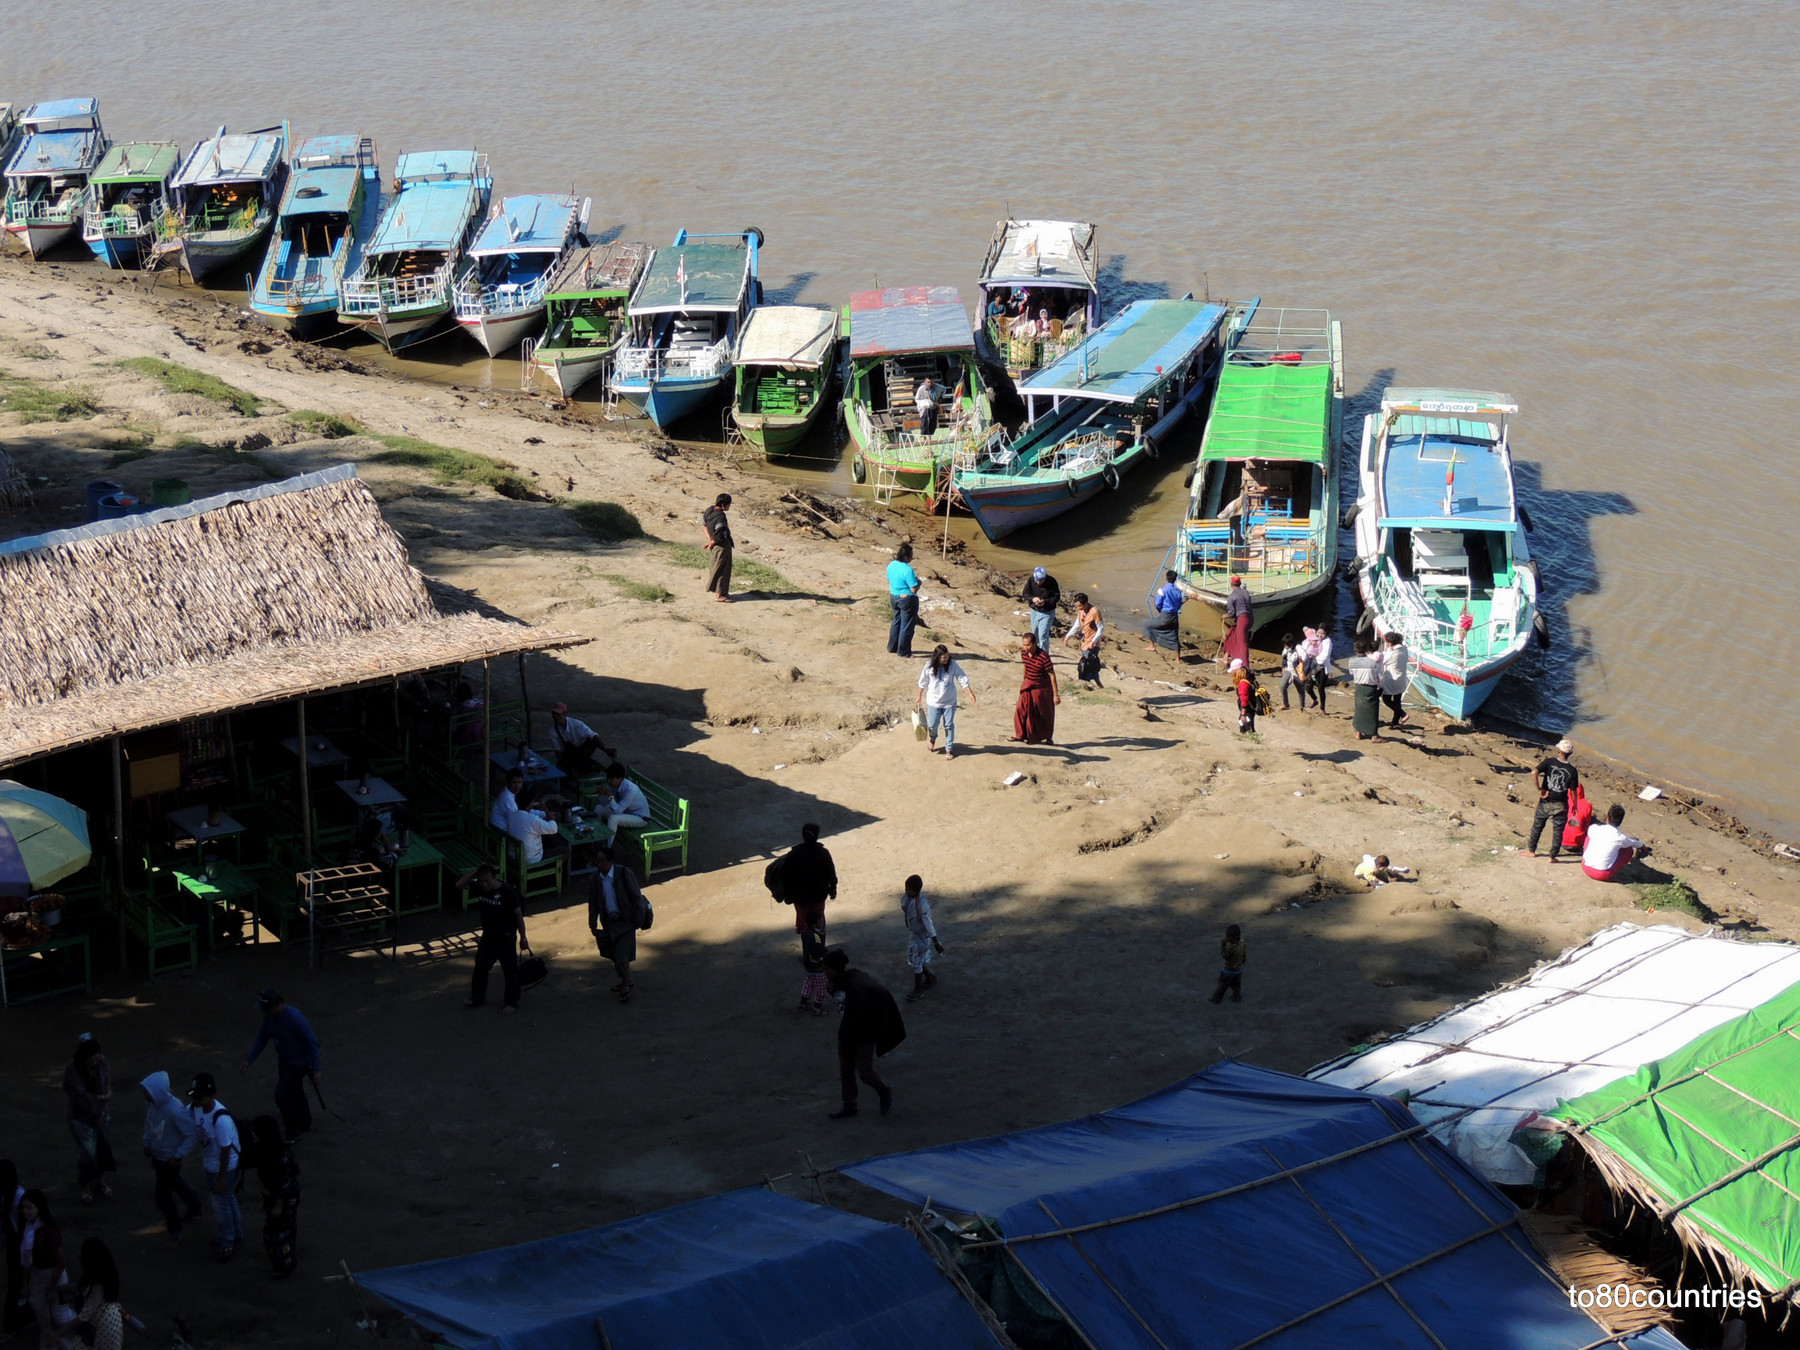 Bootsanleger in Bagan am Irrawaddy